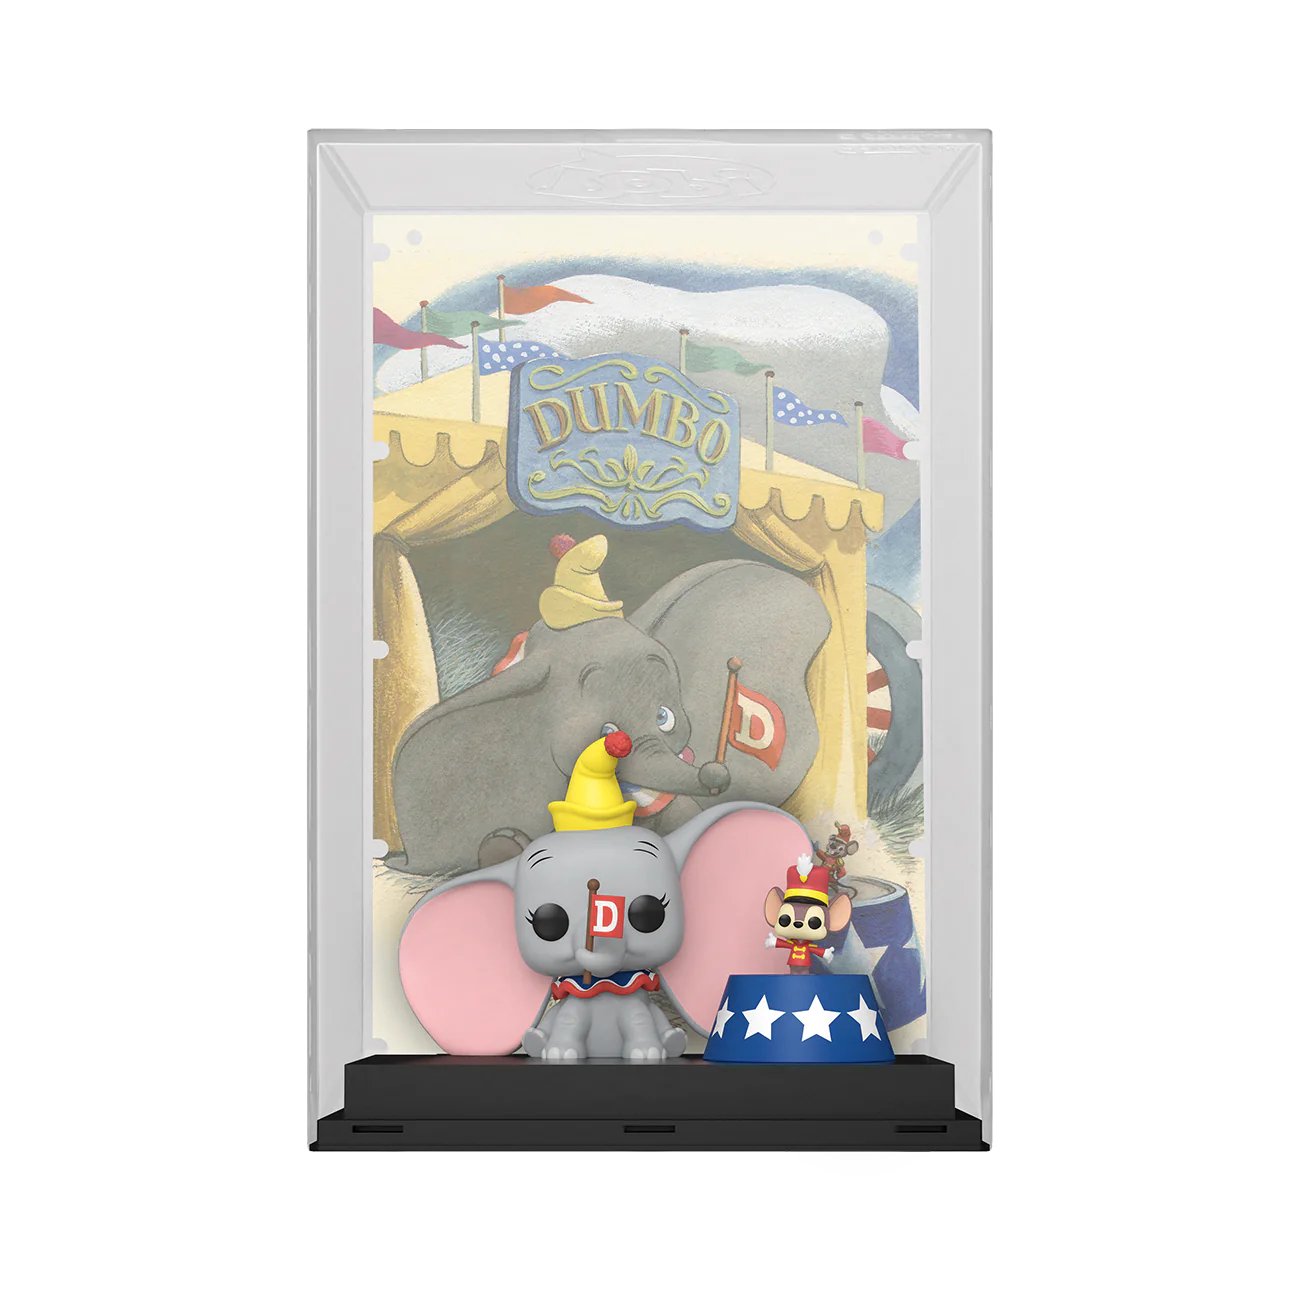 Funko Pop Movie Posters: Disney 100 - Dumbo